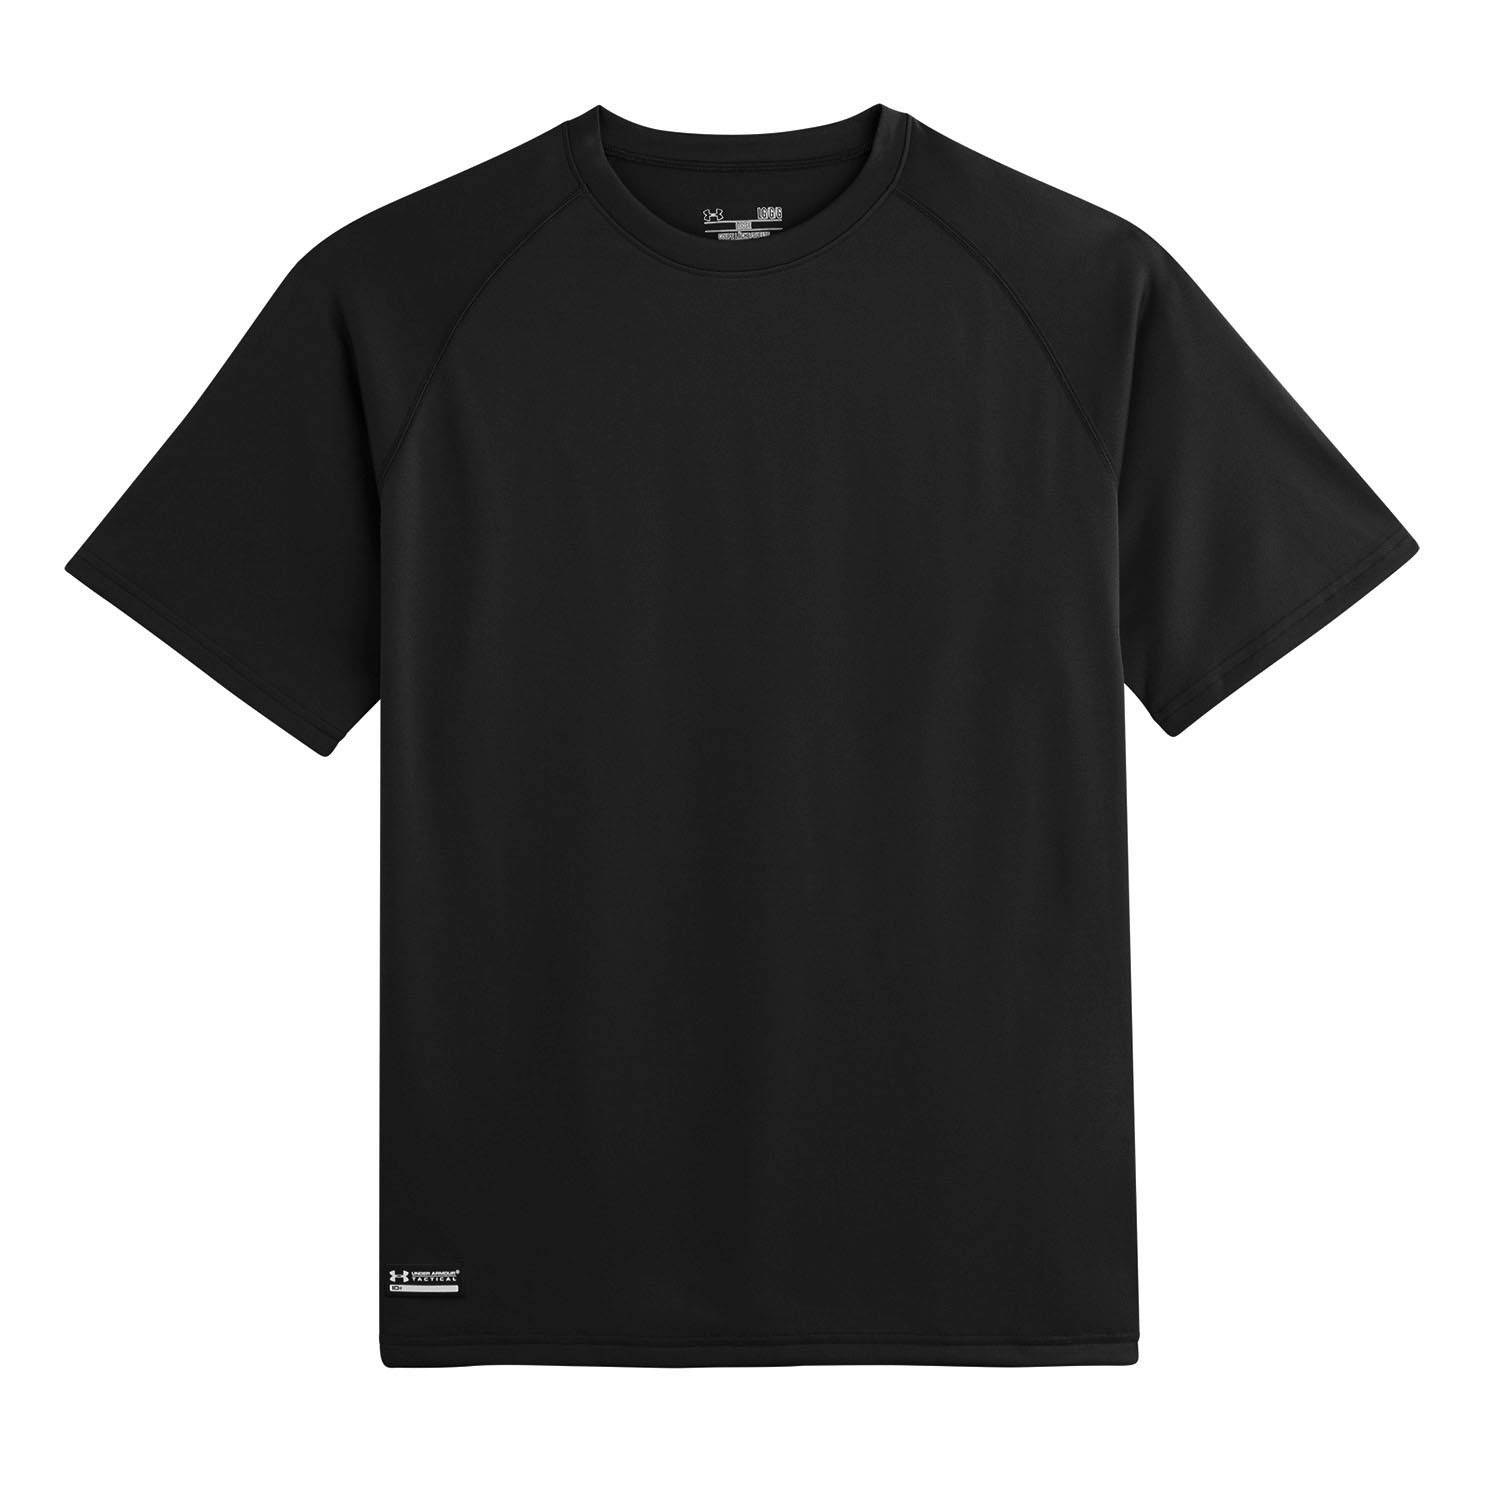 1005684 Men's Brown Tactical Tech Short Sleeve Shirt - Size Small 